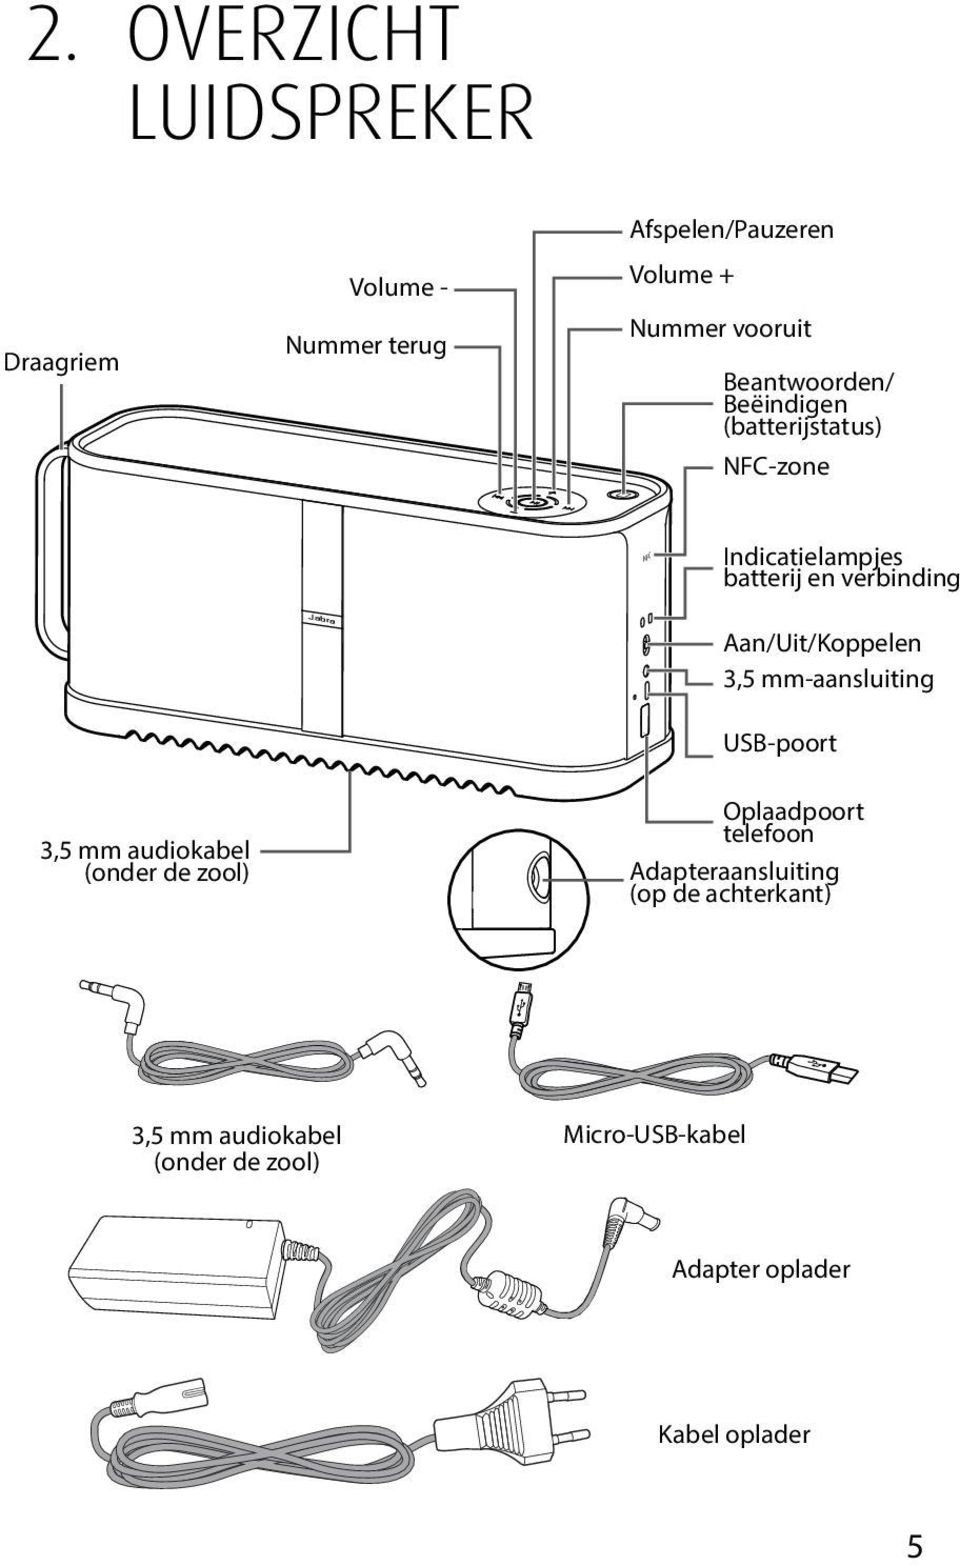 Aan/Uit/Koppelen 3,5 mm-aansluiting USB-poort 3,5 mm audiokabel (onder de zool) Oplaadpoort telefoon